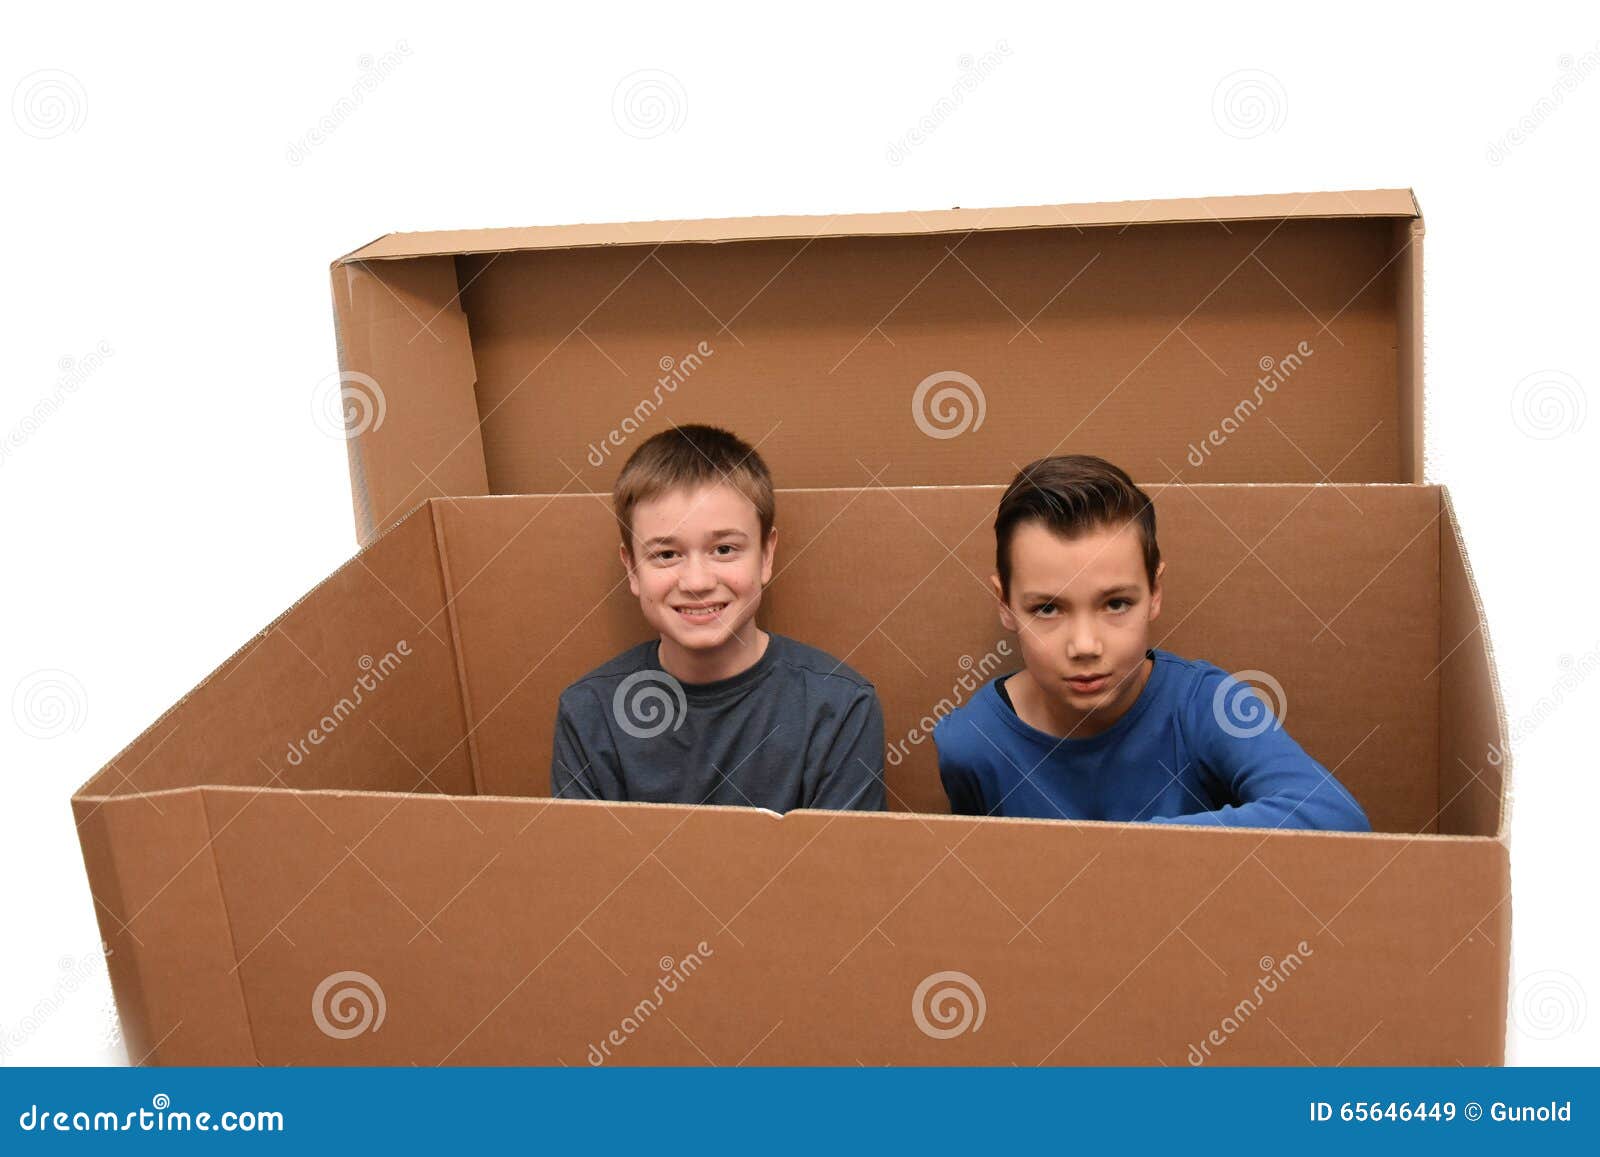 Мальчик в коробке 2009. Box boys. Moving boy. Stuck in Box.